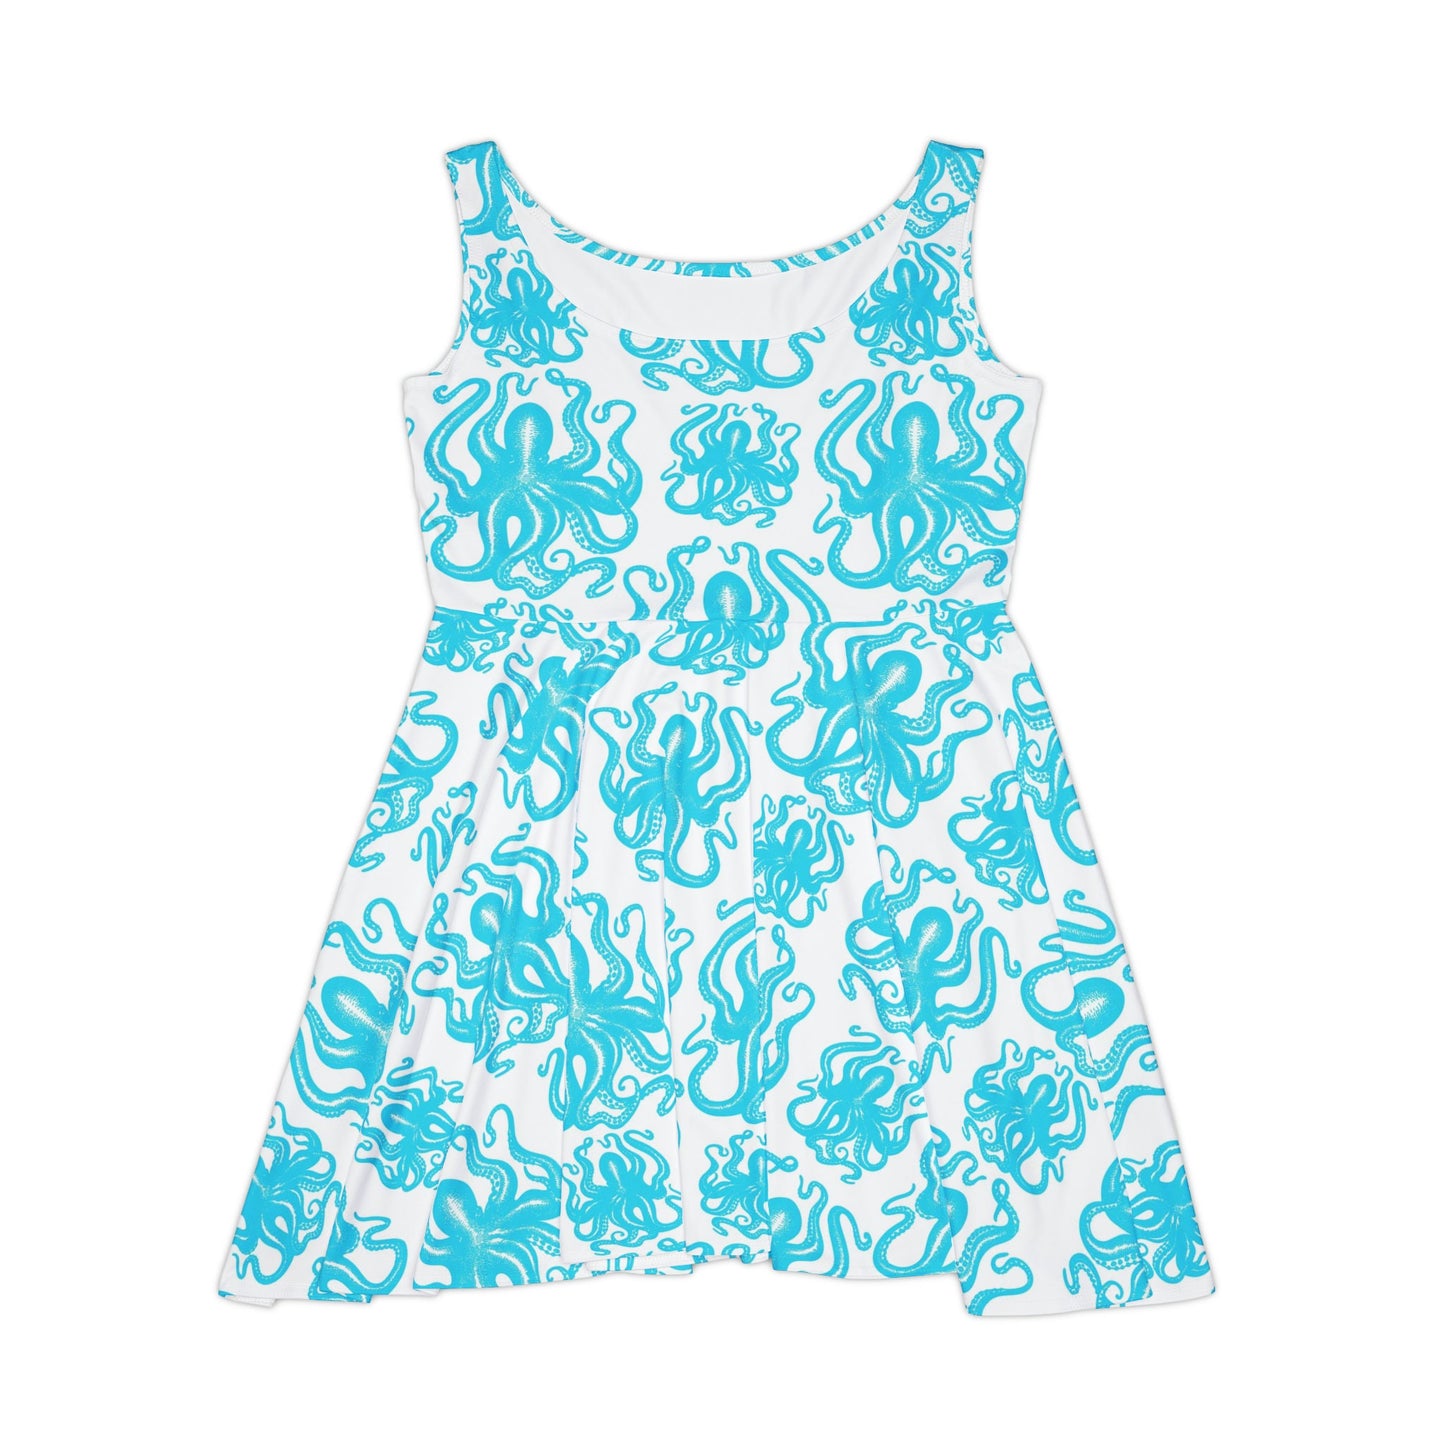 Beach Blue Octopus Art Skater Dress, Octopus print Dress, Beach-themed Dress, Women's Blue Flowy Flared Dress, Womens Summer Dress